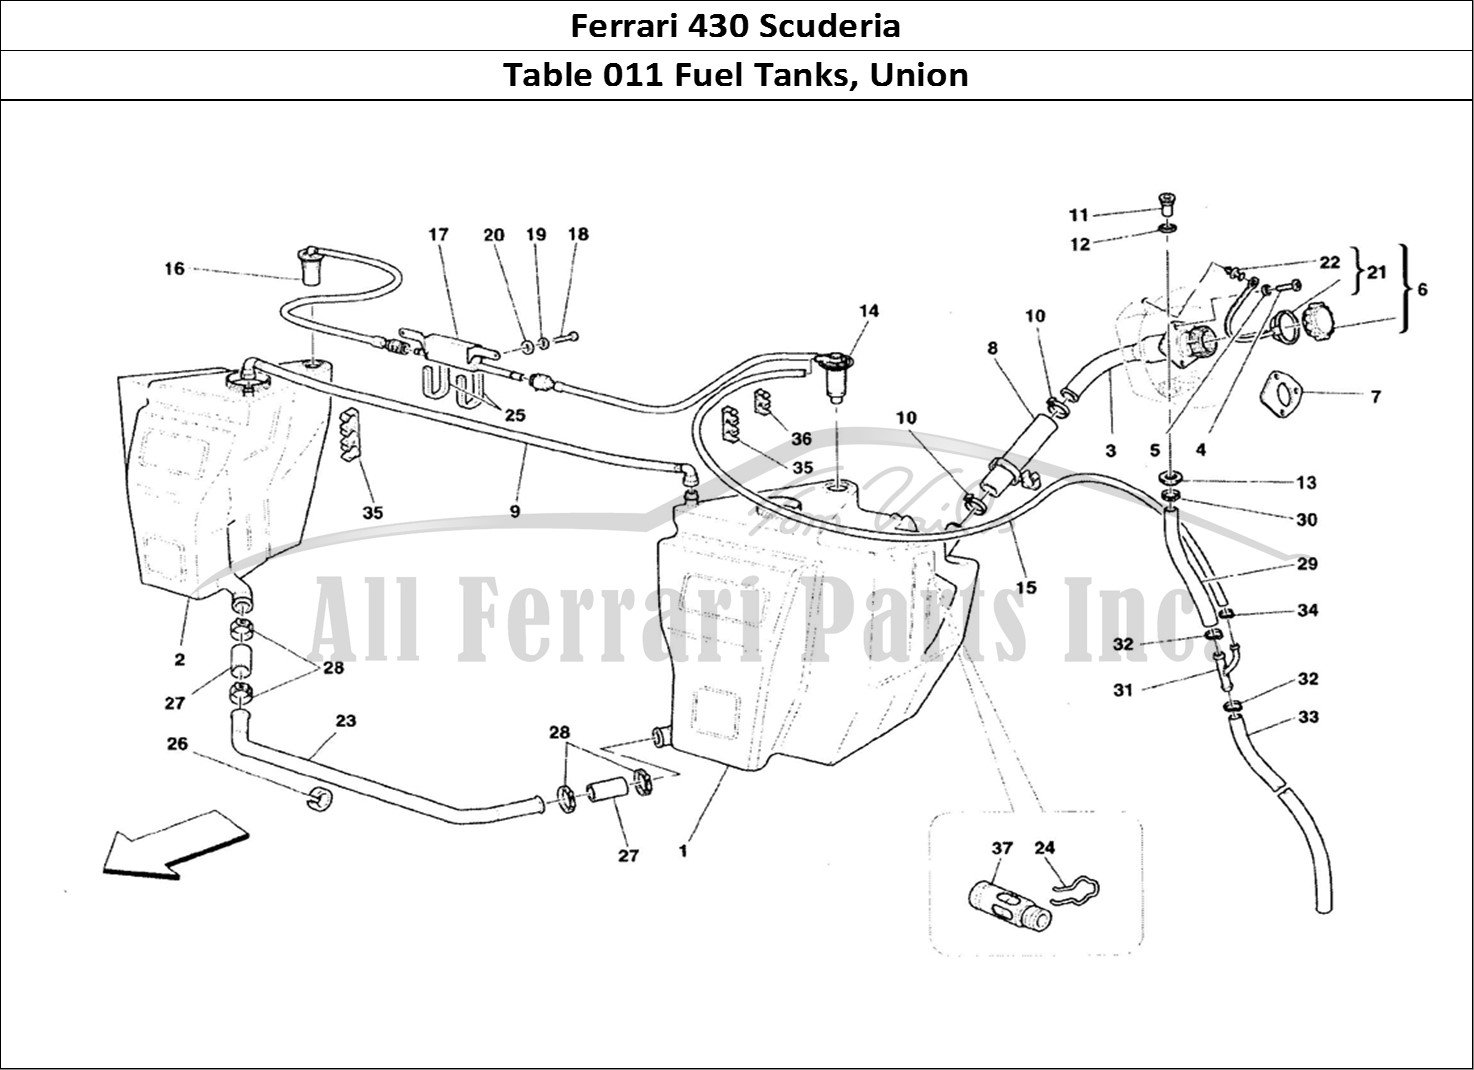 Ferrari Parts Ferrari 430 Scuderia Page 011 Fuel Tanks and Union